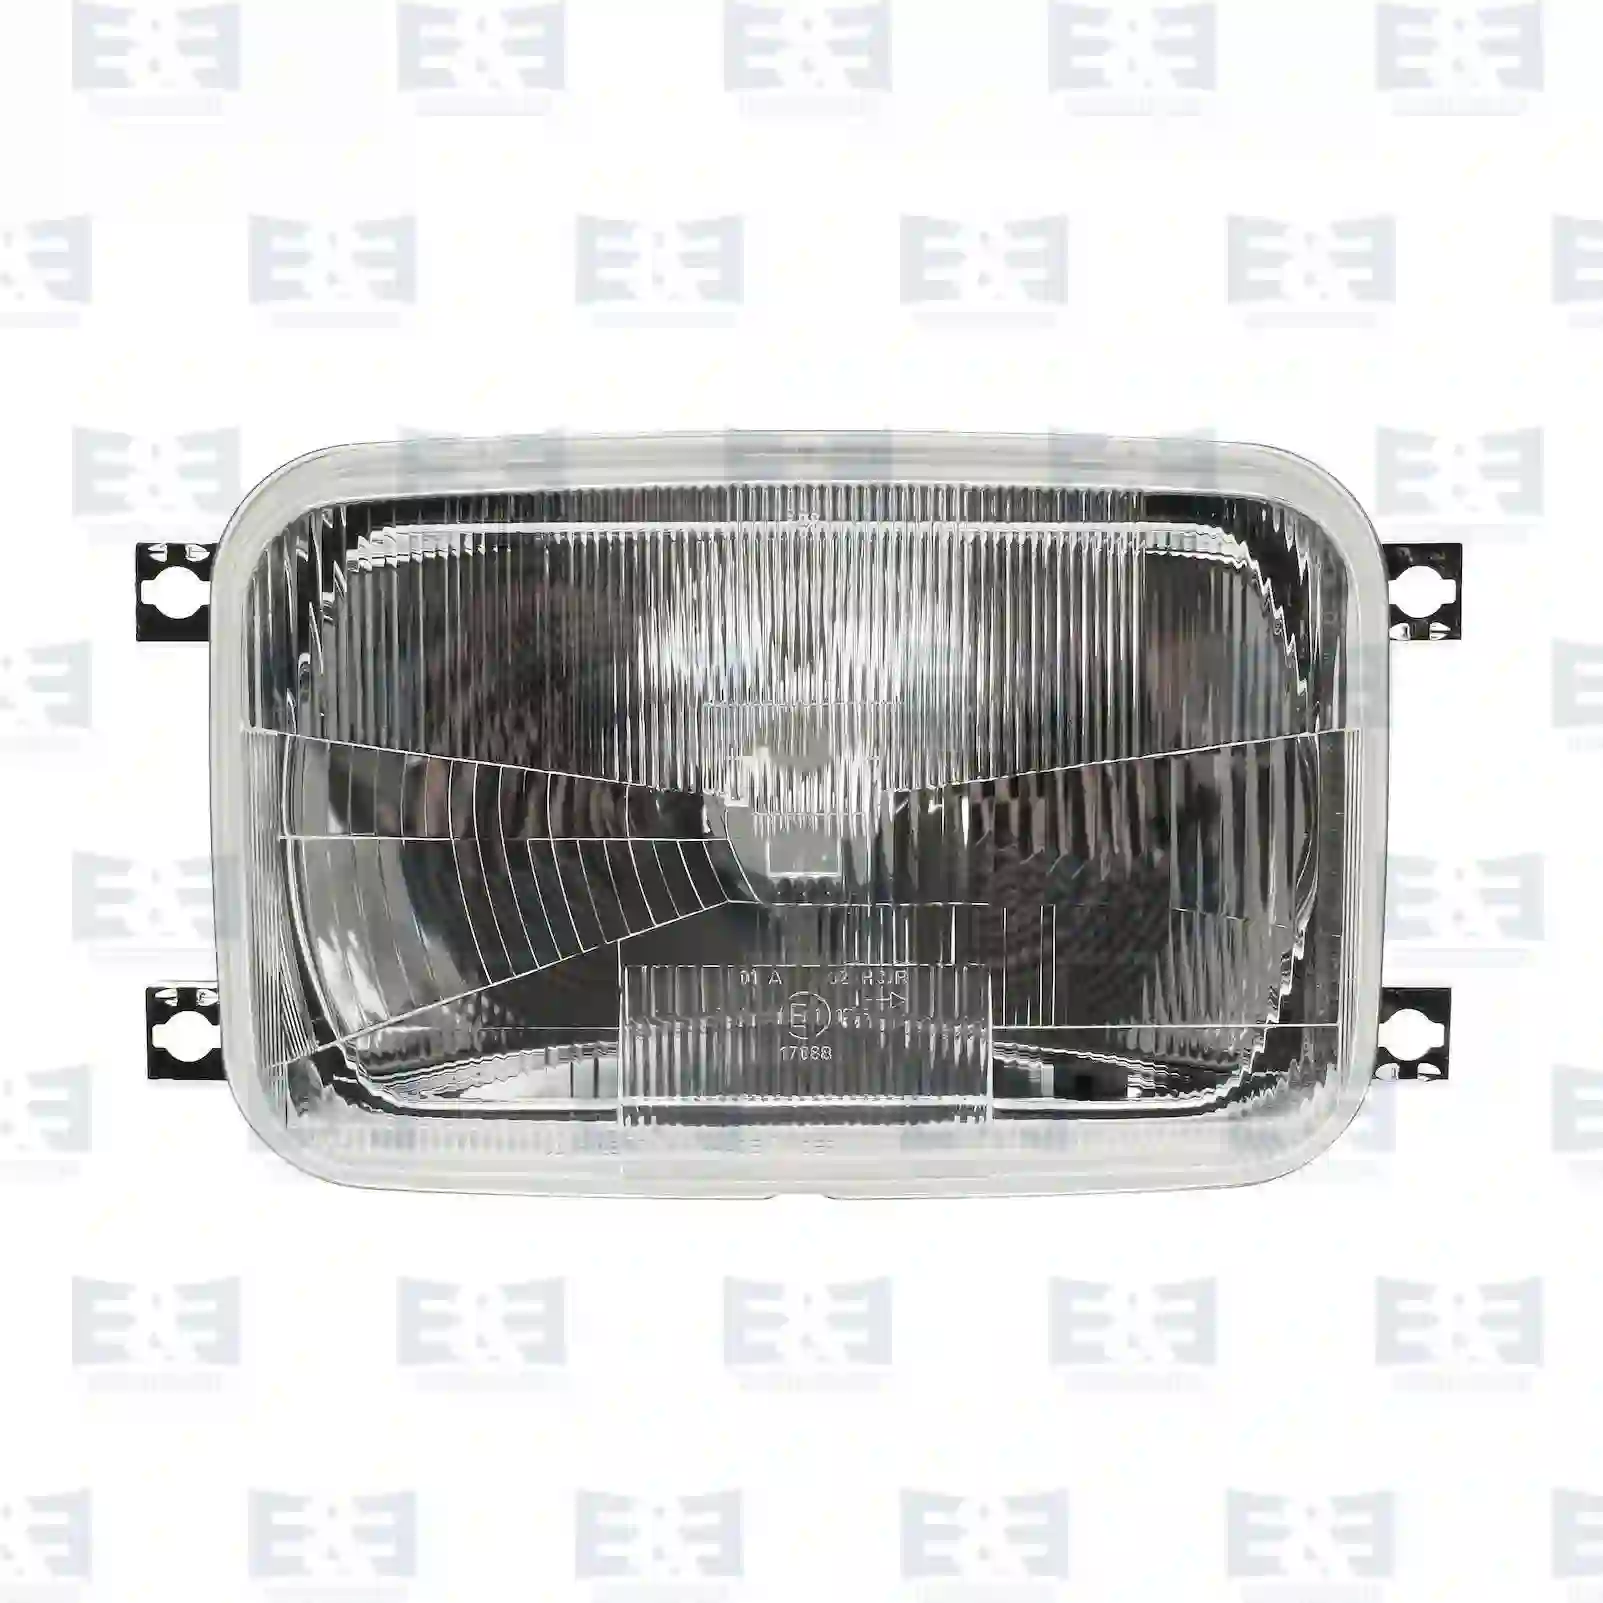  Headlamp || E&E Truck Spare Parts | Truck Spare Parts, Auotomotive Spare Parts